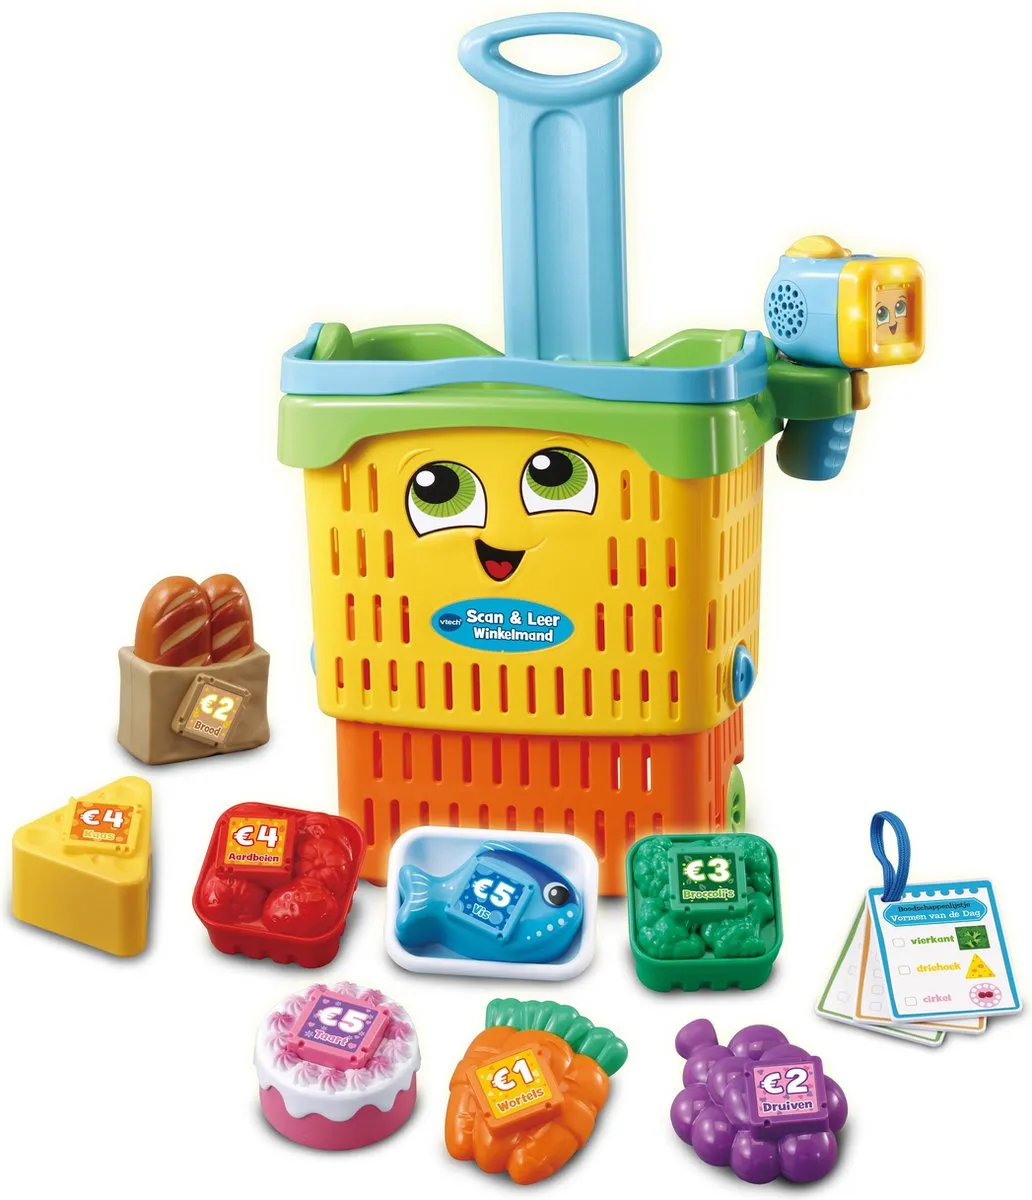 VTech Scan & Leer 2 in 1 Winkelmand - Interactief Babyspeelgoed - 1.5 tot 5 Jaar speelgoed